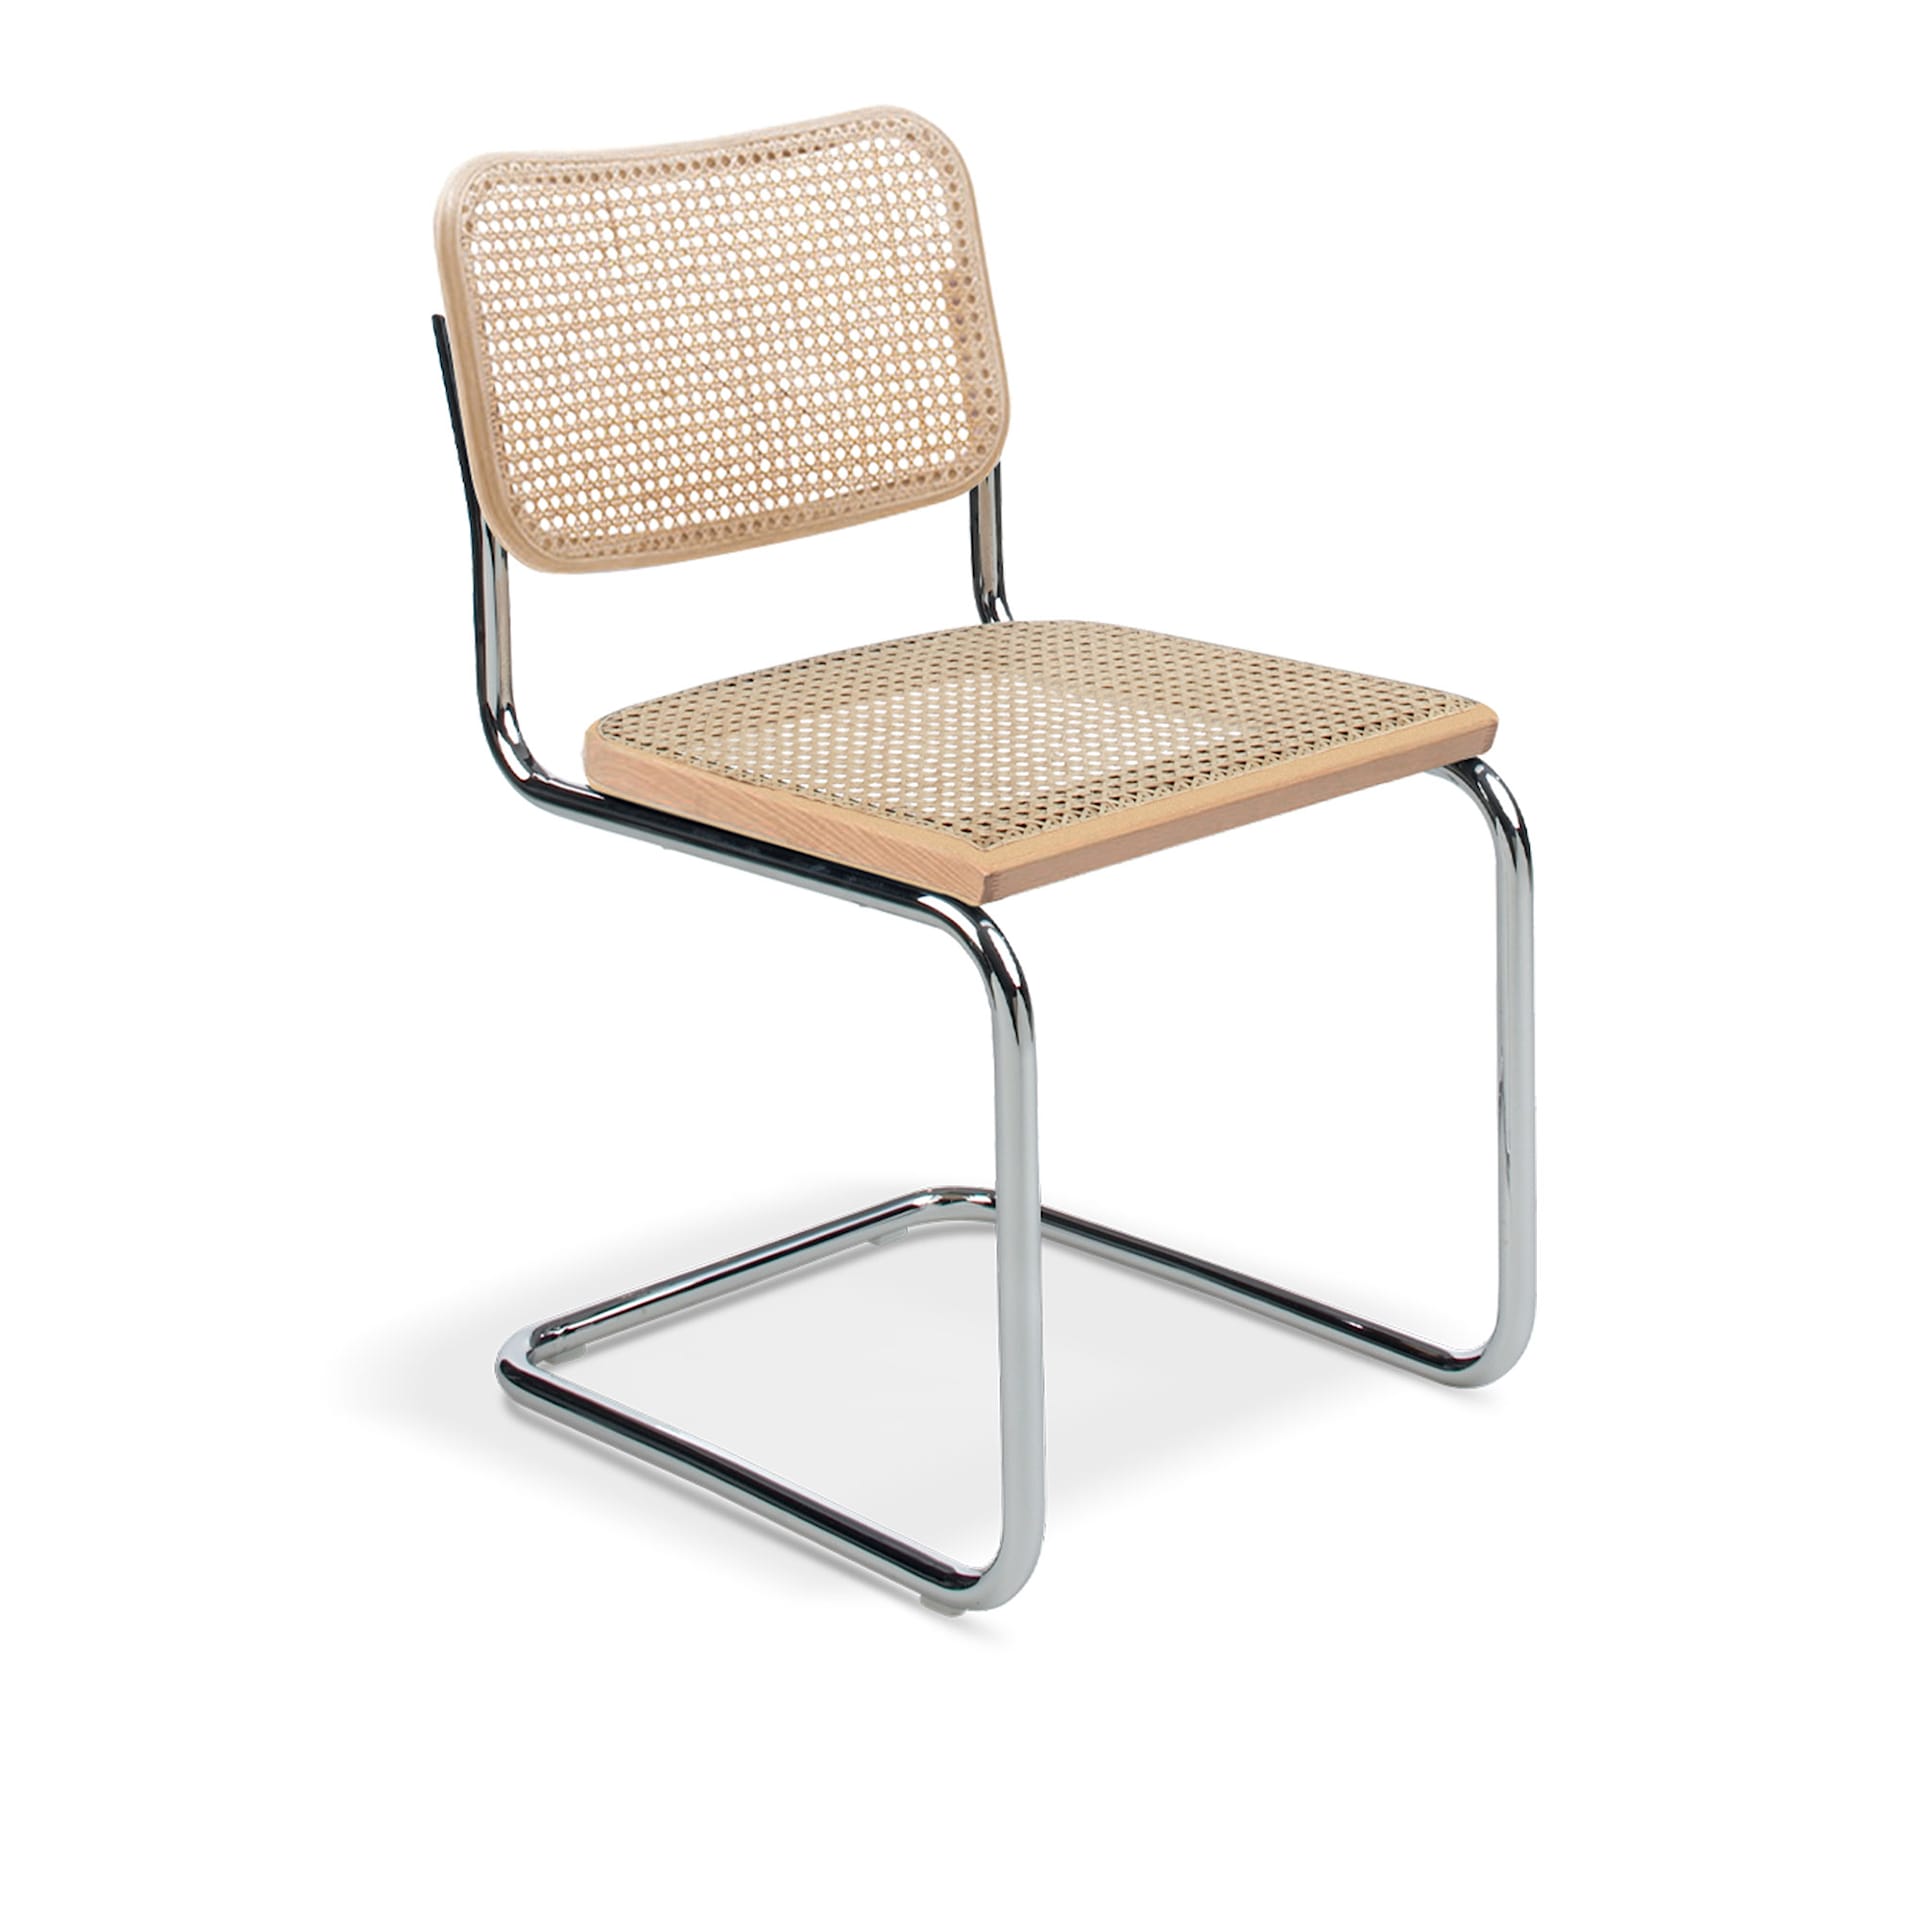 Kjøp Cesca Chair fra Knoll | Nordiska Galleriet